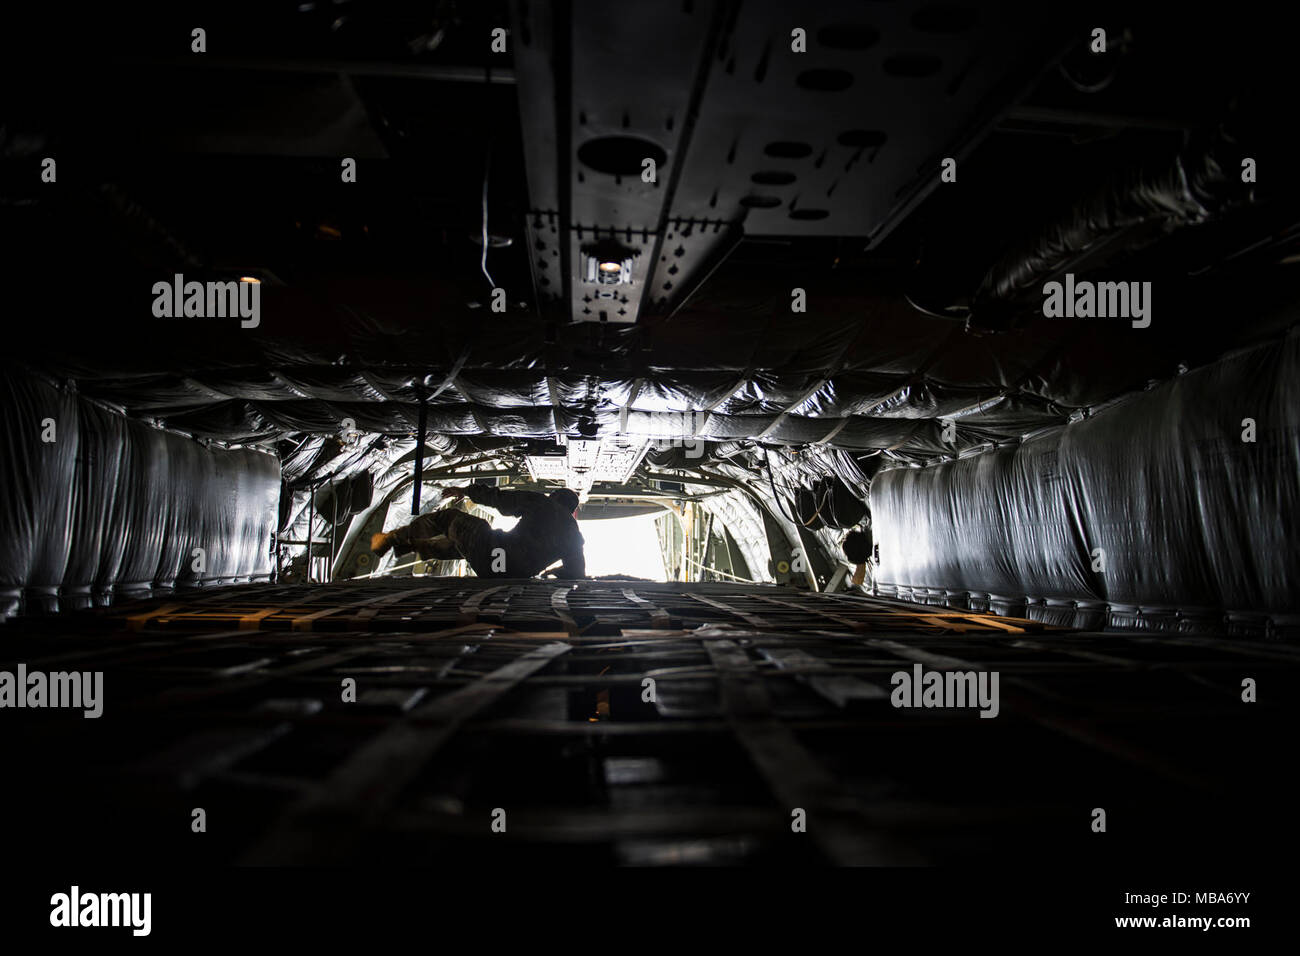 Un U.S. Air Force C-130 Hercules de l'arrimeur, affecté à la 746e Escadron de transport aérien expéditionnaire, dirige les opérations de chargement à la base aérienne d'Al Udeid, Qatar, 10 févr. 06, 2018. Les arrimeurs C-130H s'assurer que la cargaison est transportée en toute sécurité et sont responsables d'assurer la livraison rapide de troupes et stratégique tous les types de marchandises. (U.S. Air Force Banque D'Images